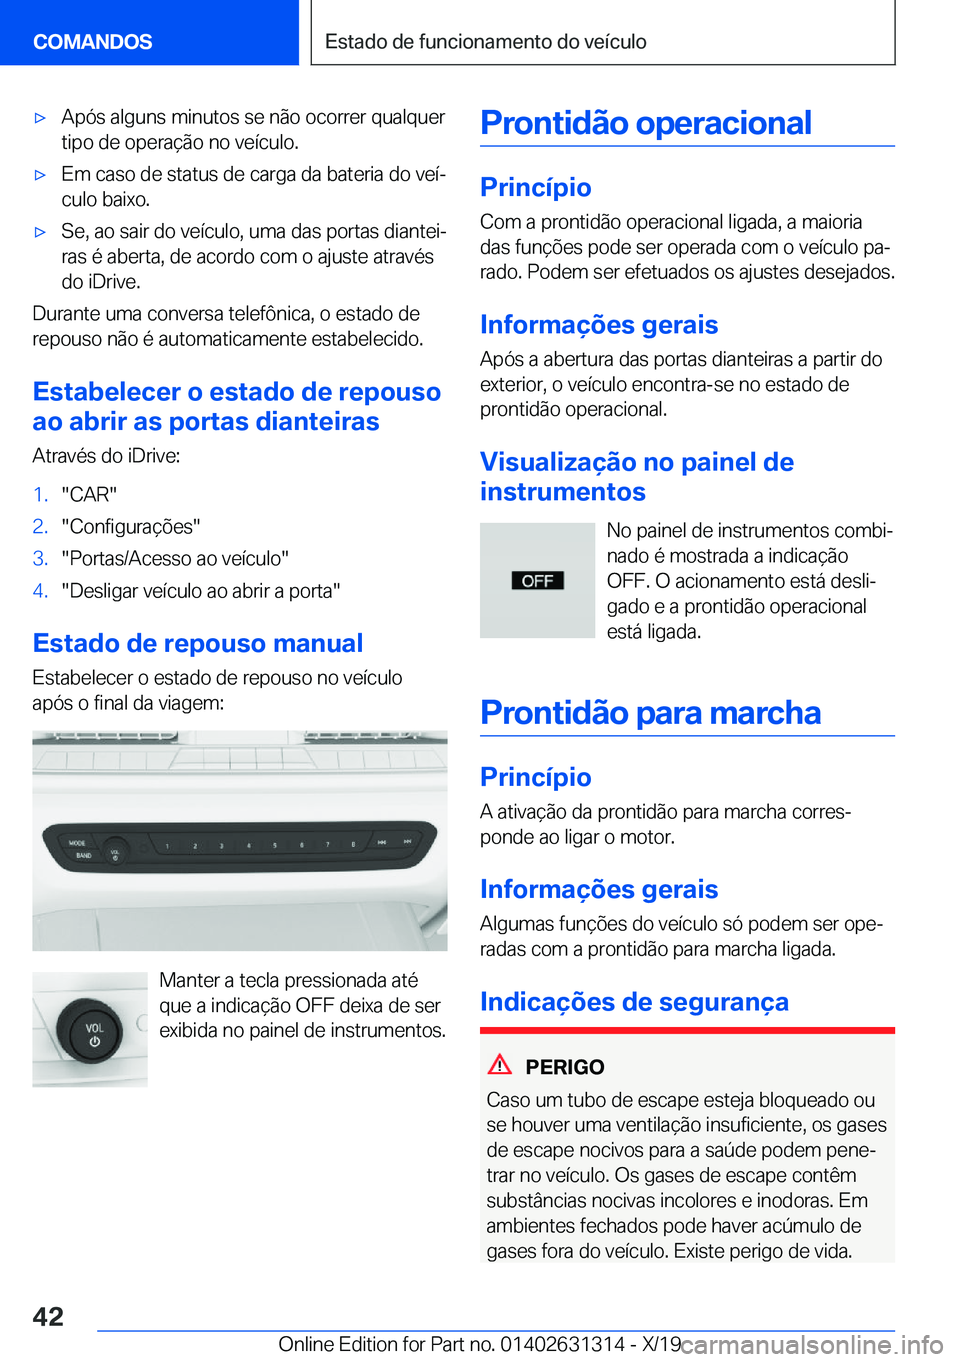 BMW M8 2020  Manual do condutor (in Portuguese) 'x�A�p�ó�s��a�l�g�u�n�s��m�i�n�u�t�o�s��s�e��n�ã�o��o�c�o�r�r�e�r��q�u�a�l�q�u�e�r�t�i�p�o��d�e��o�p�e�r�a�